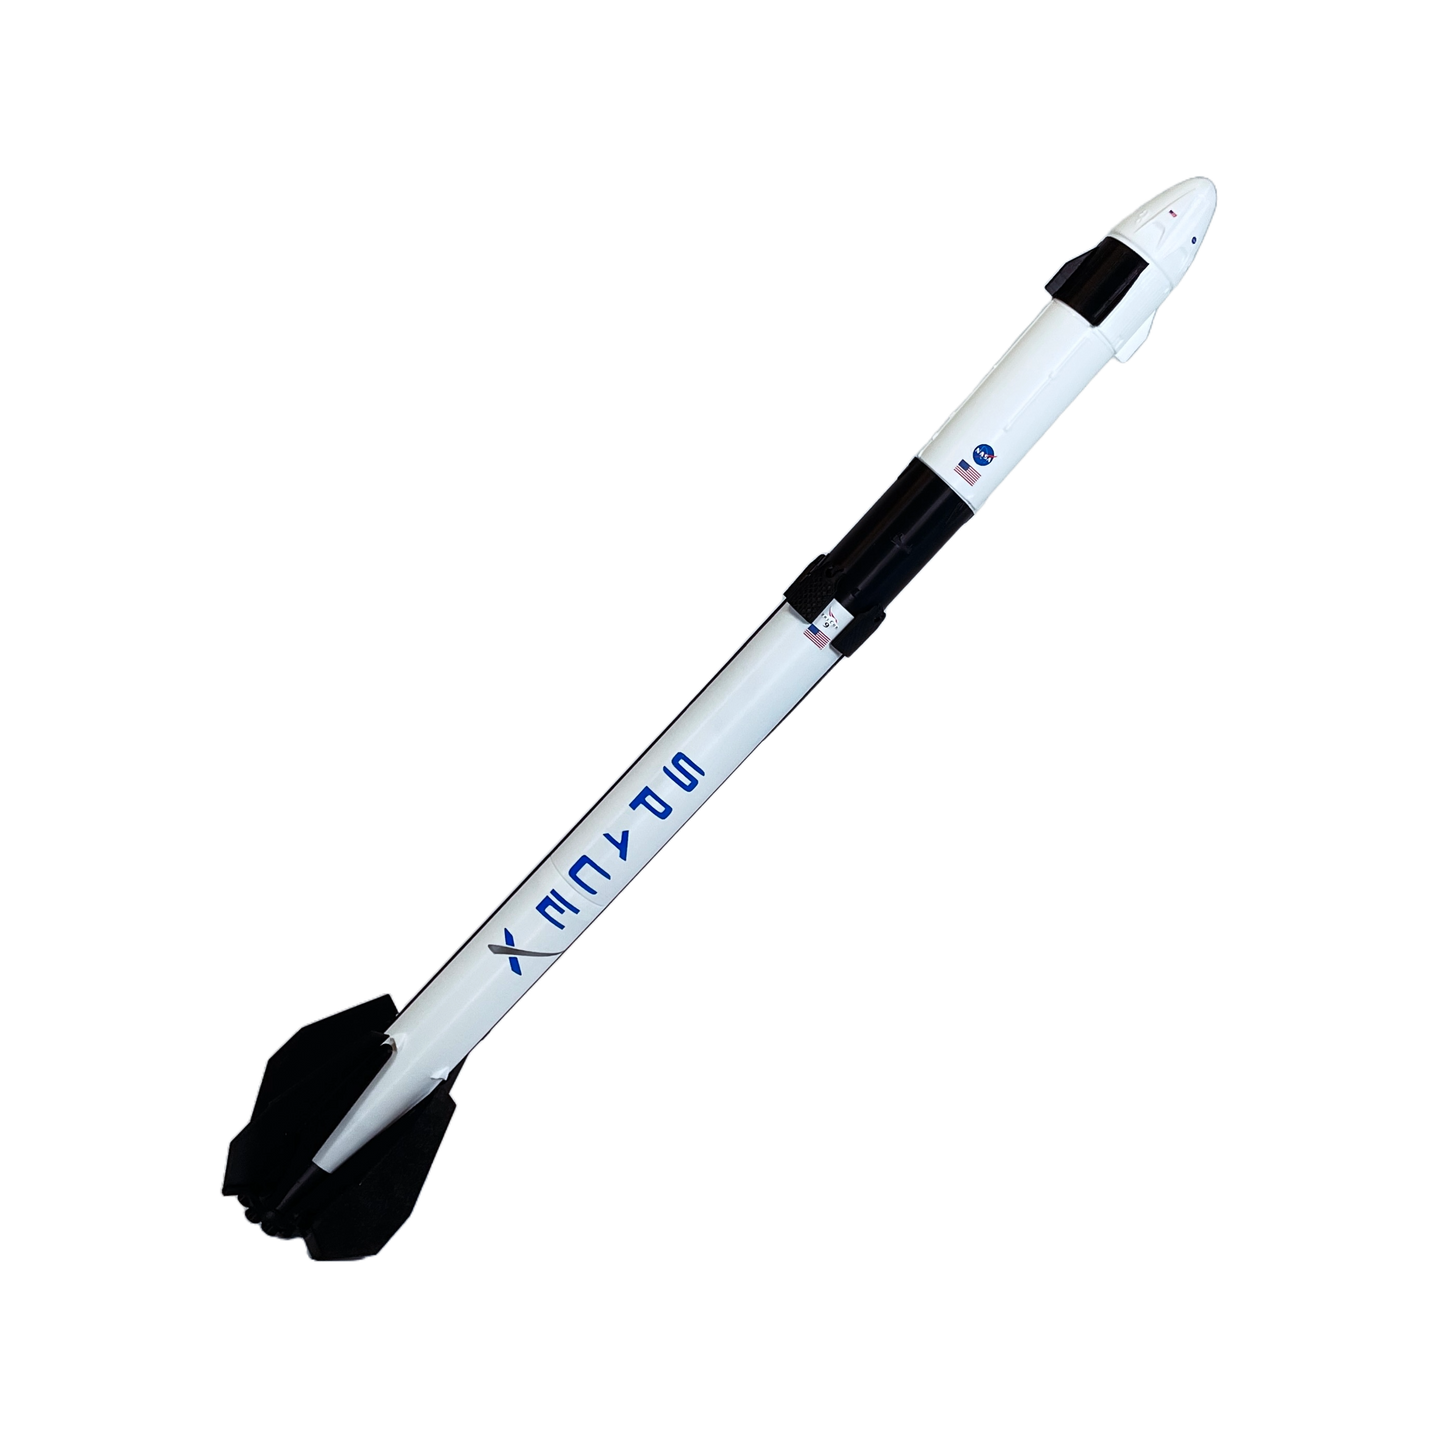 SpaceX Falcon 9 Model Rocket Kit